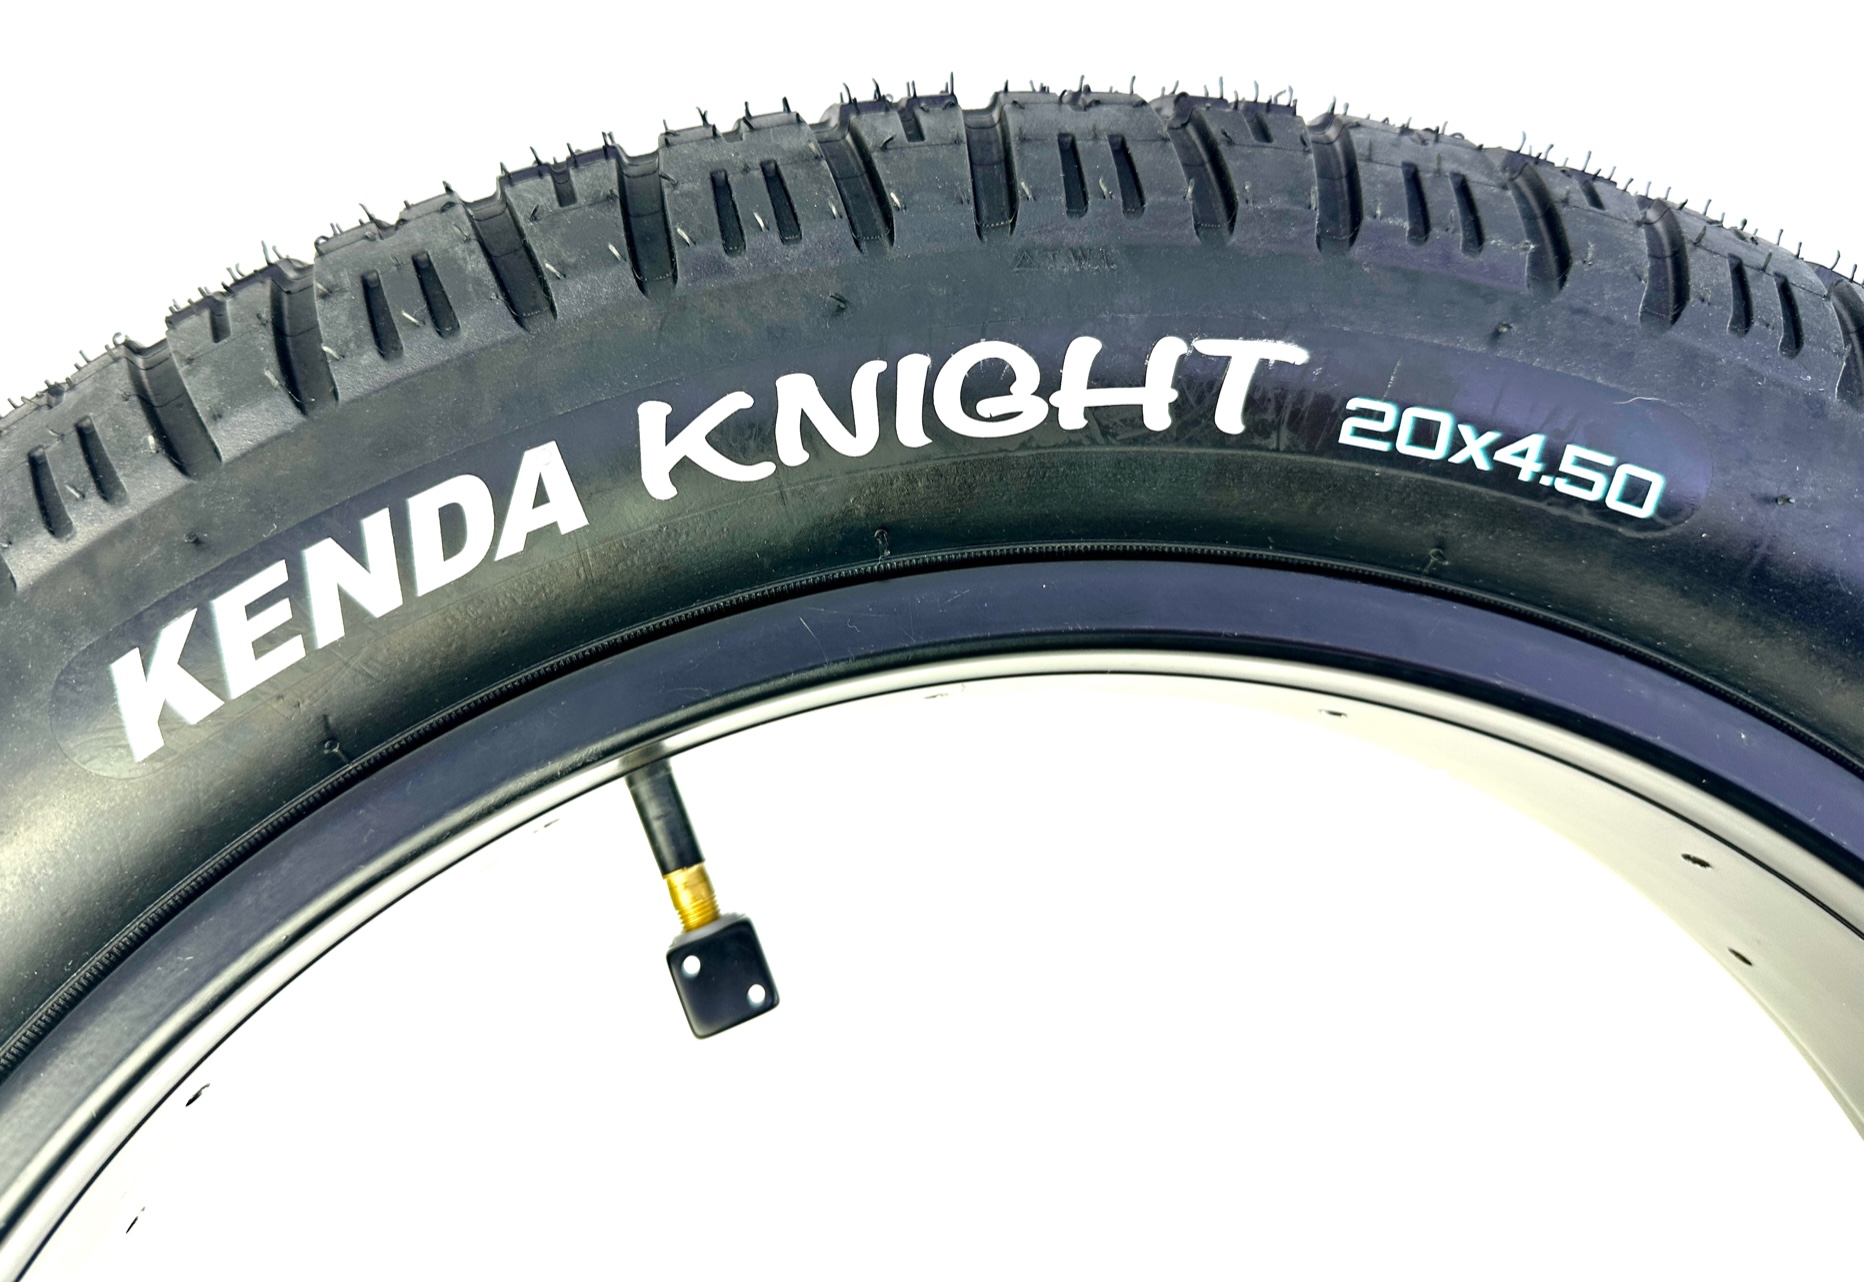 Kenda Knight Reifen 20 x 4,5 reinschwarz